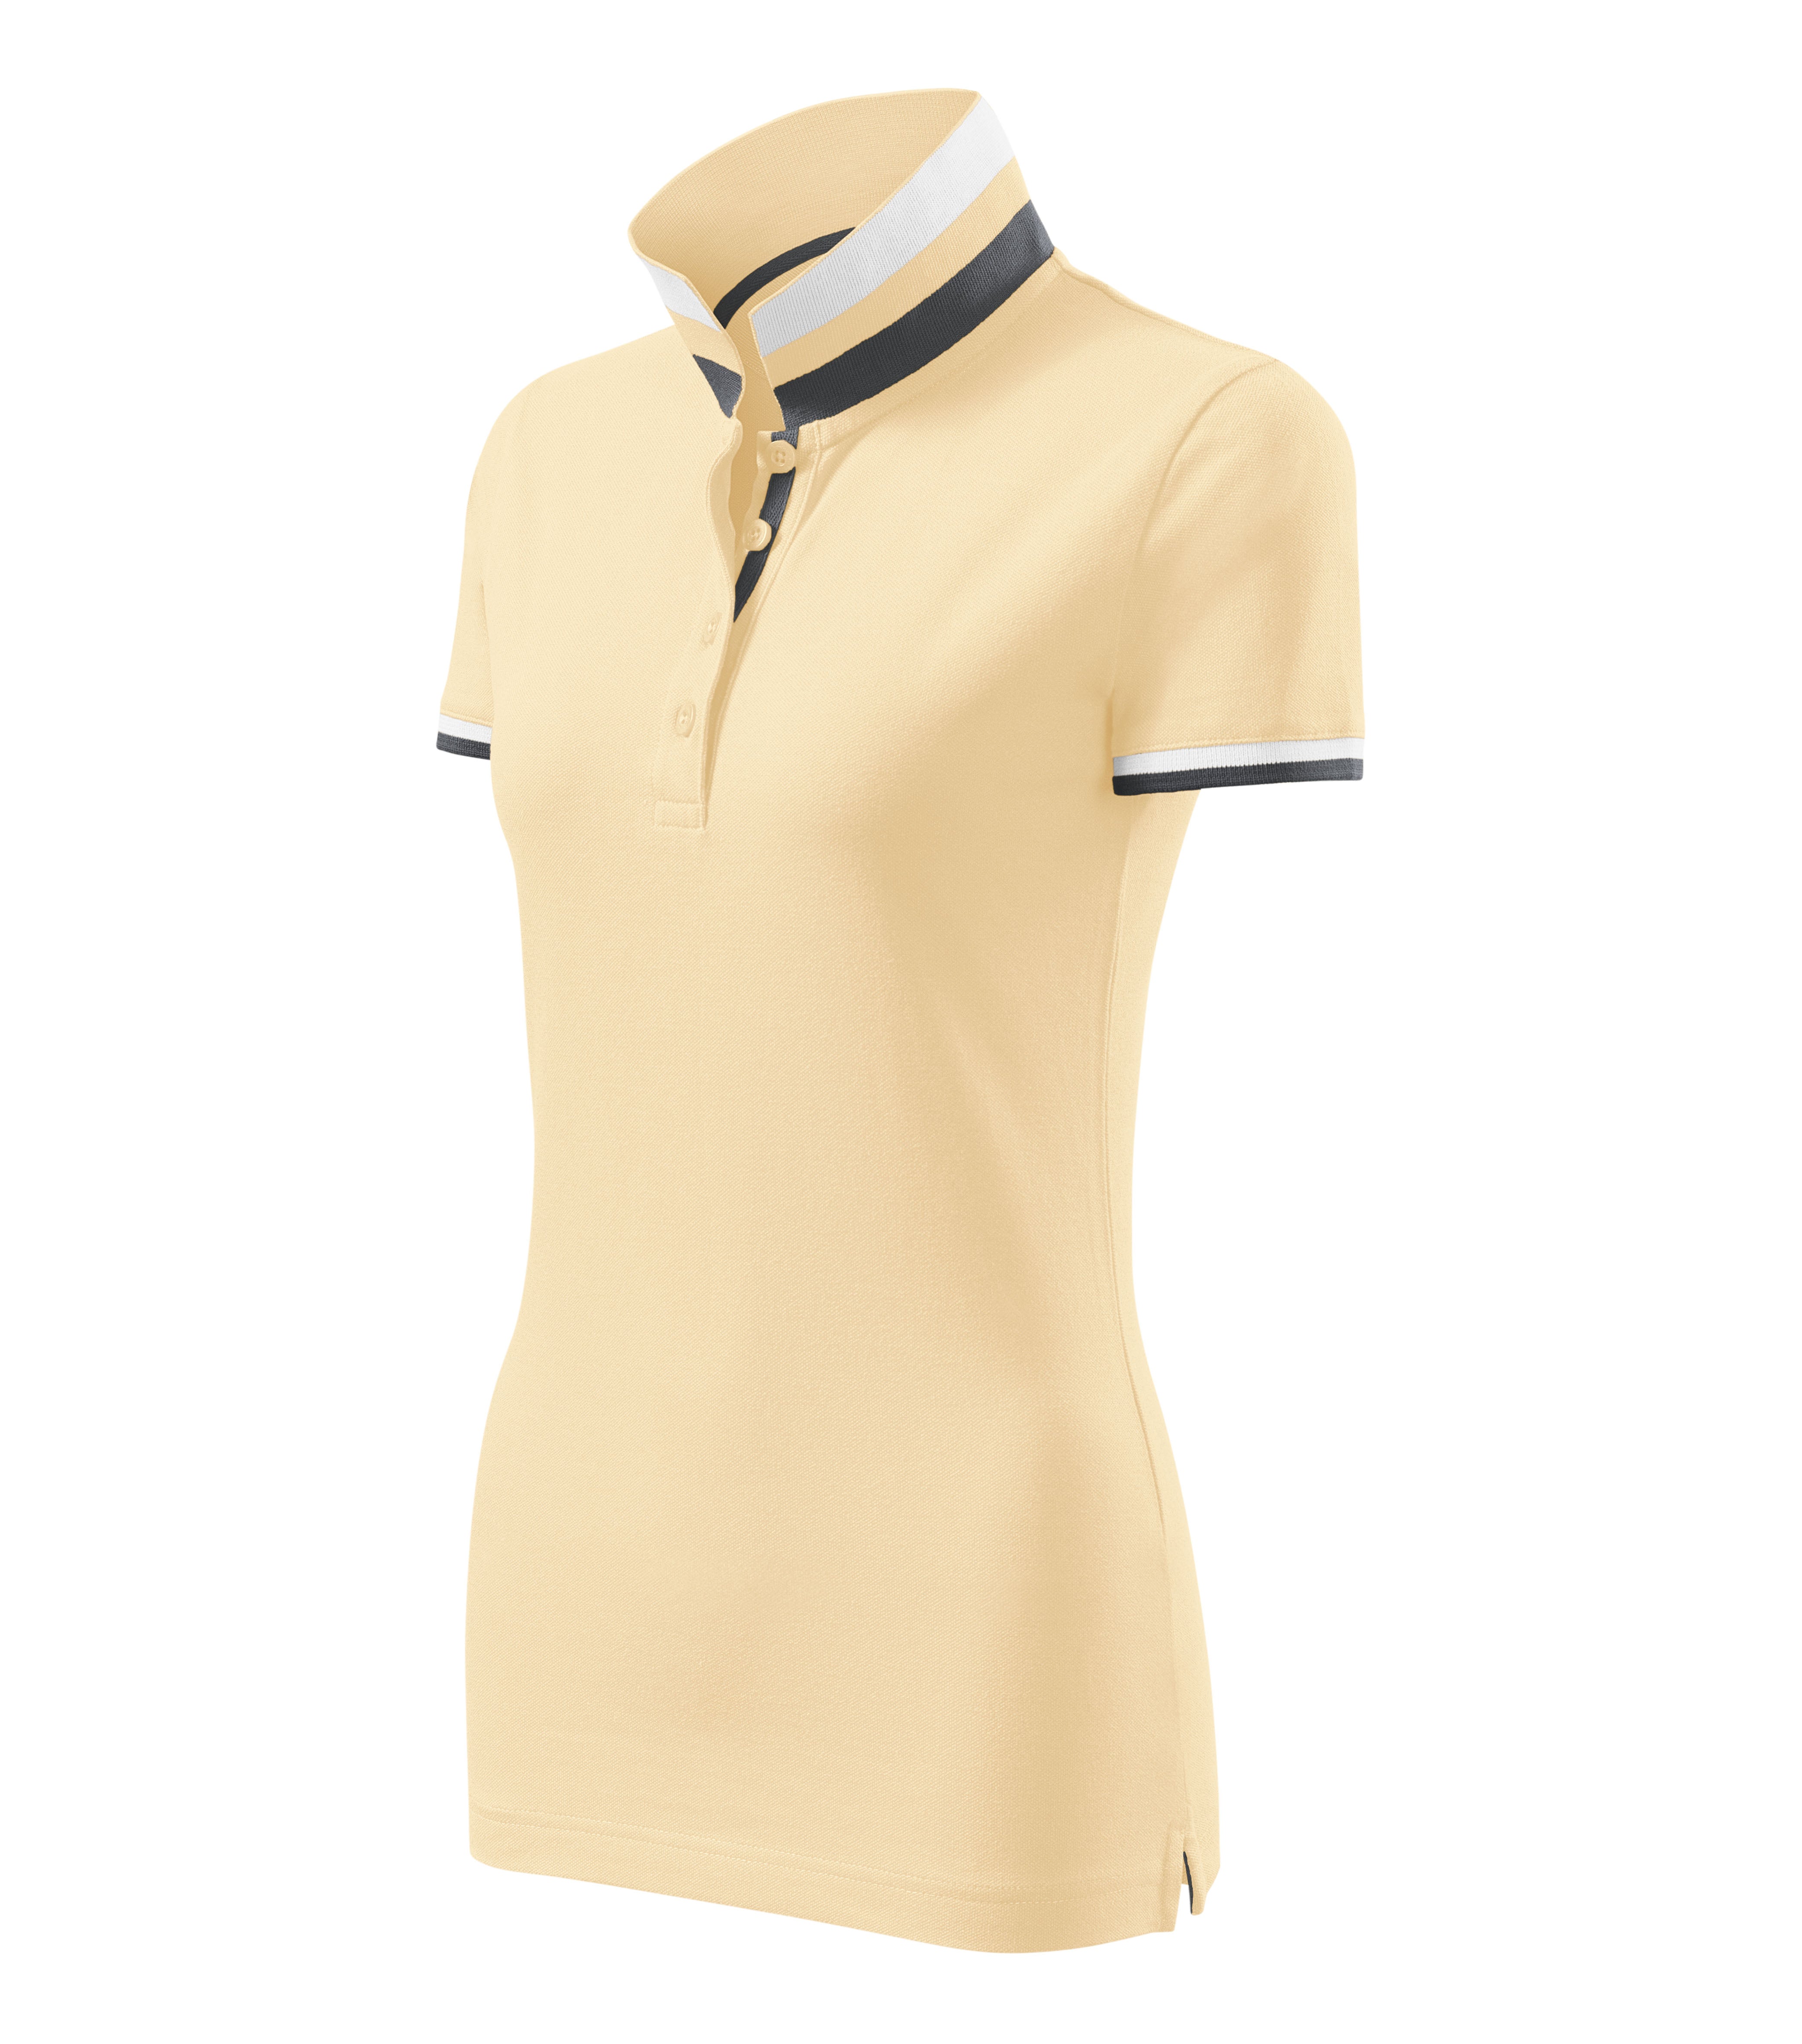 Collar Up tricou polo pentru Femei Diferite Culori/Marimi B58